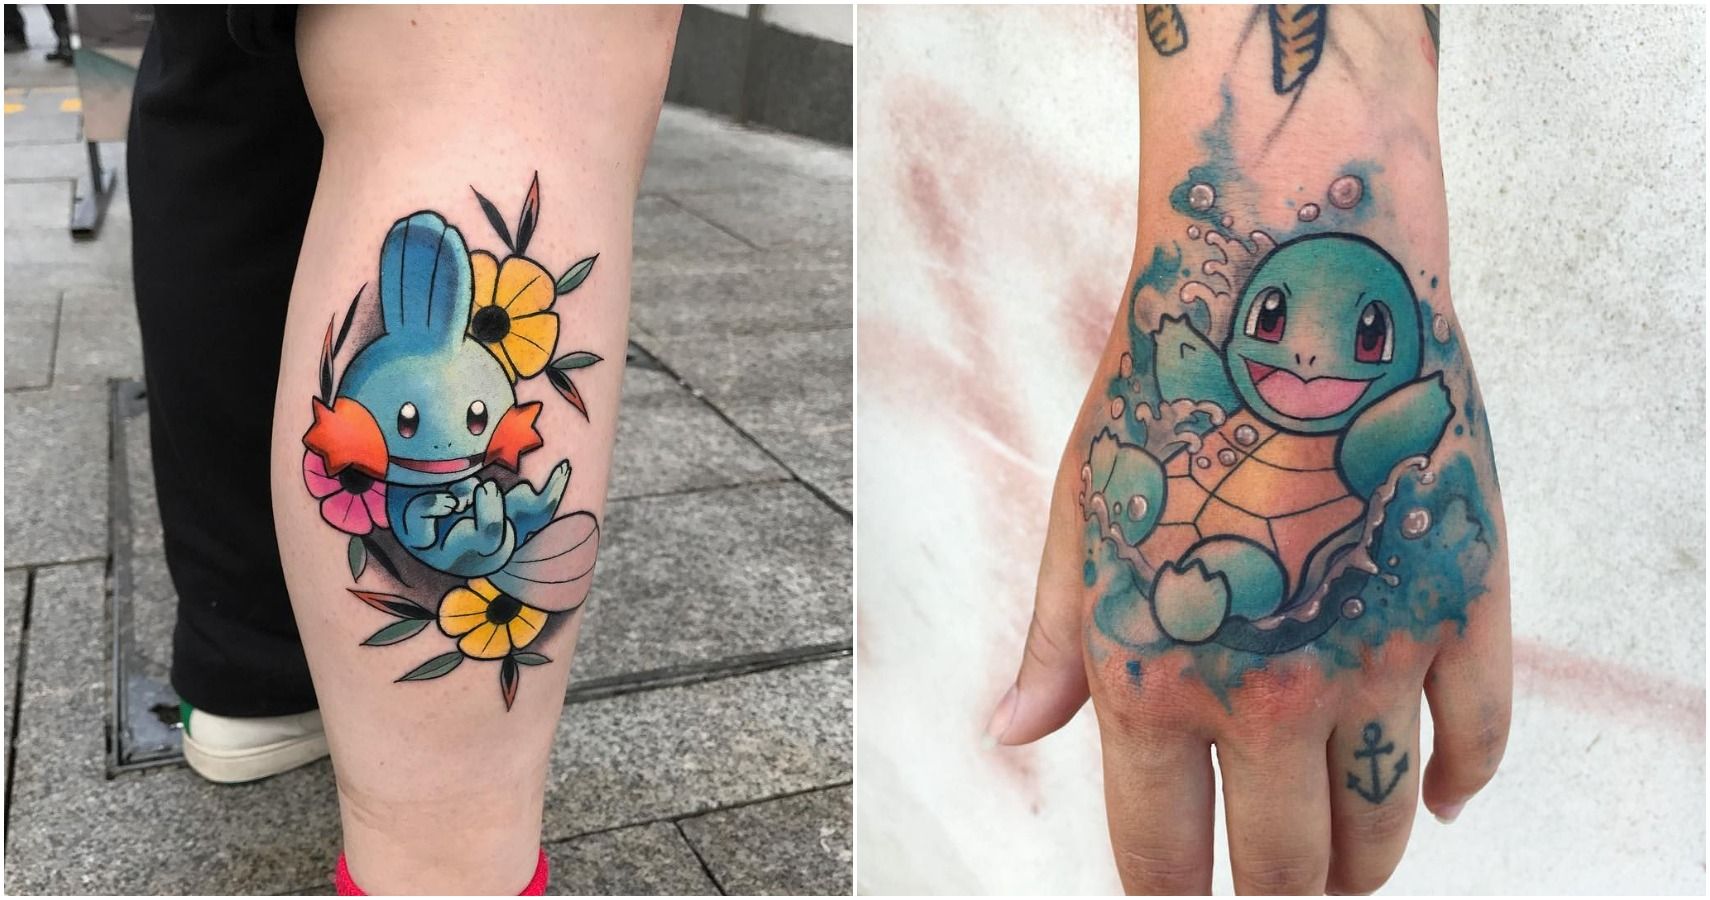 Pokemon Tattoo Ideas